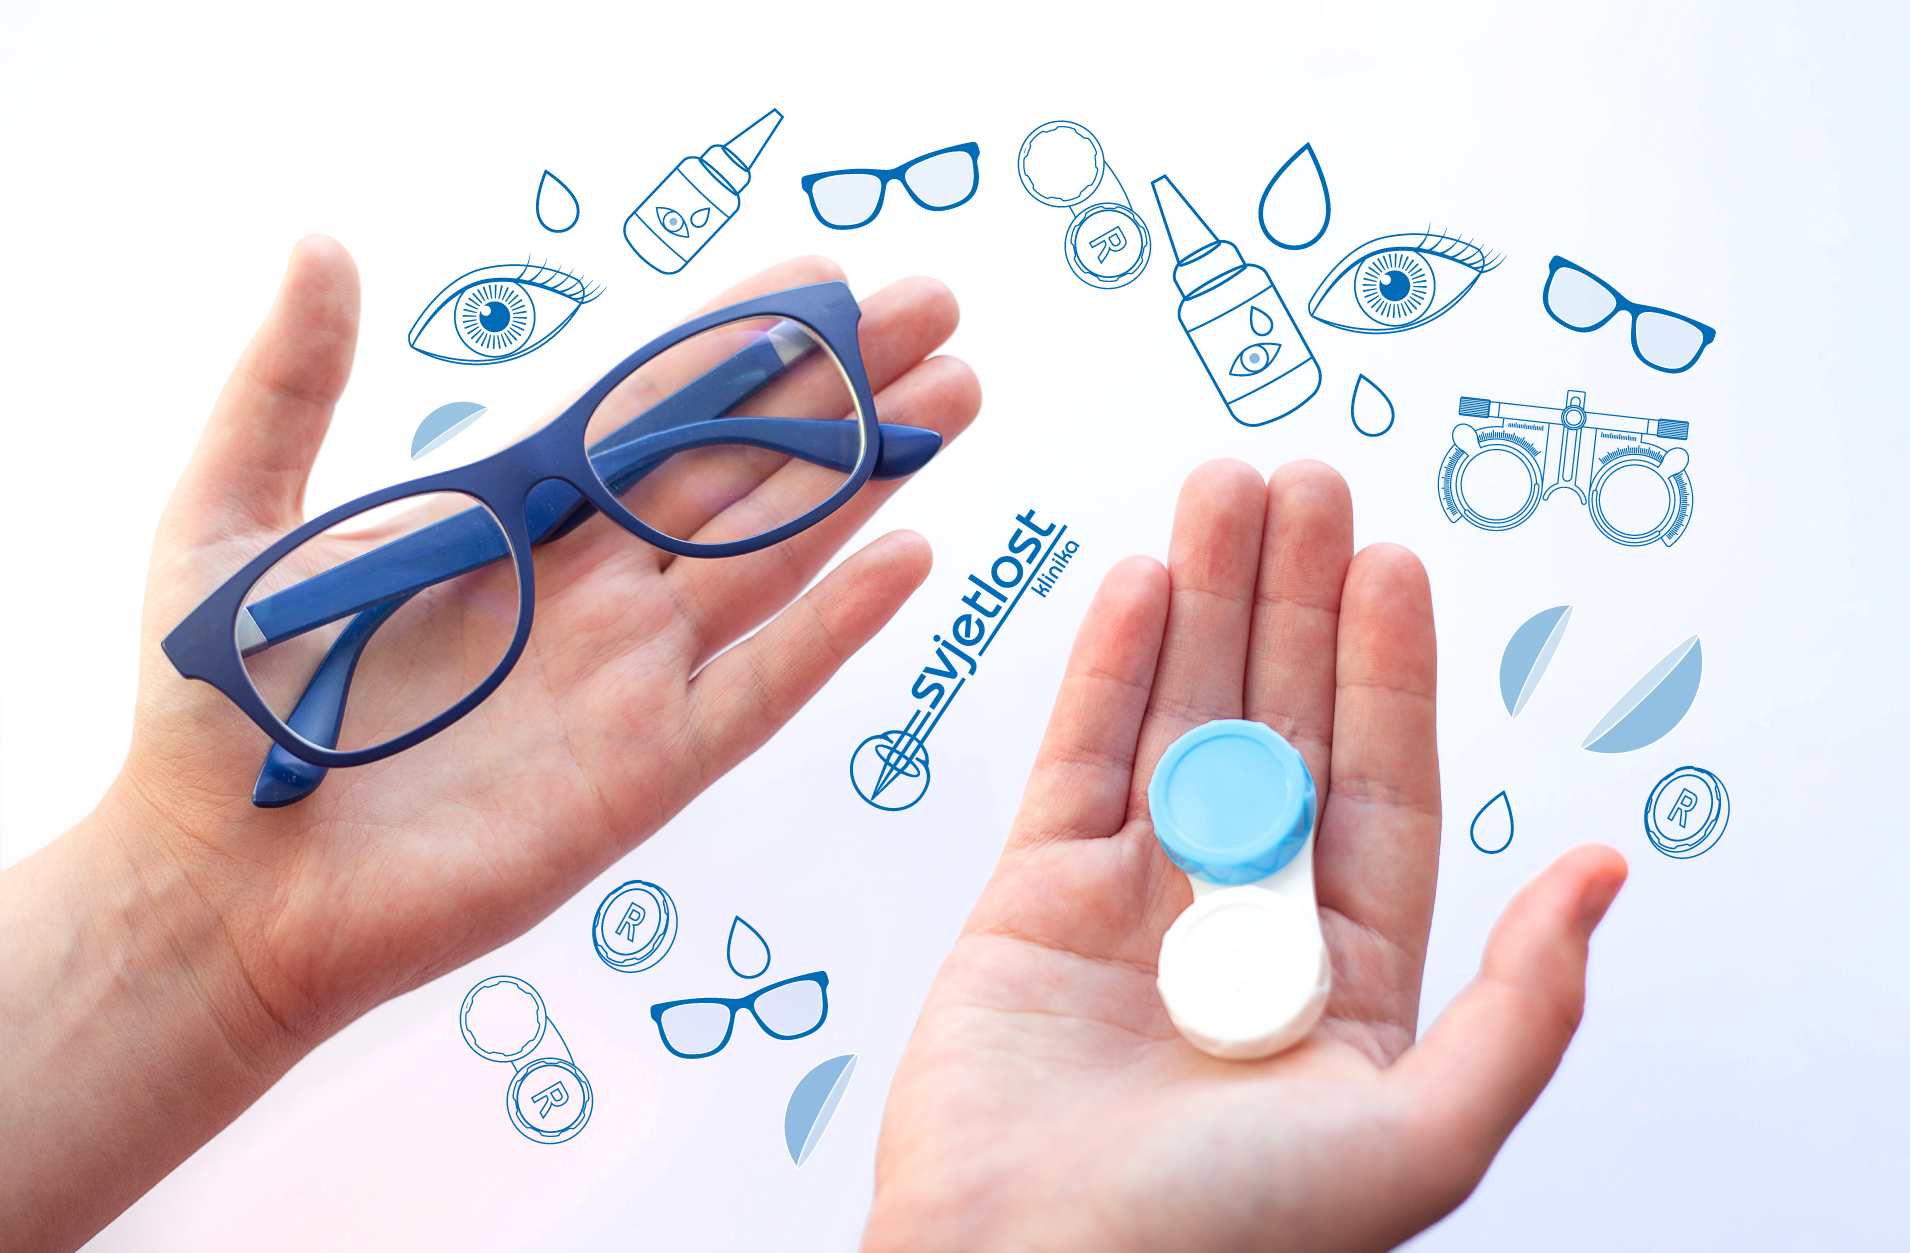 Gibt es Vorteile bei der Verwendung einer Brille gegenüber Kontaktlinsen während der COVID-19-Pandemie?